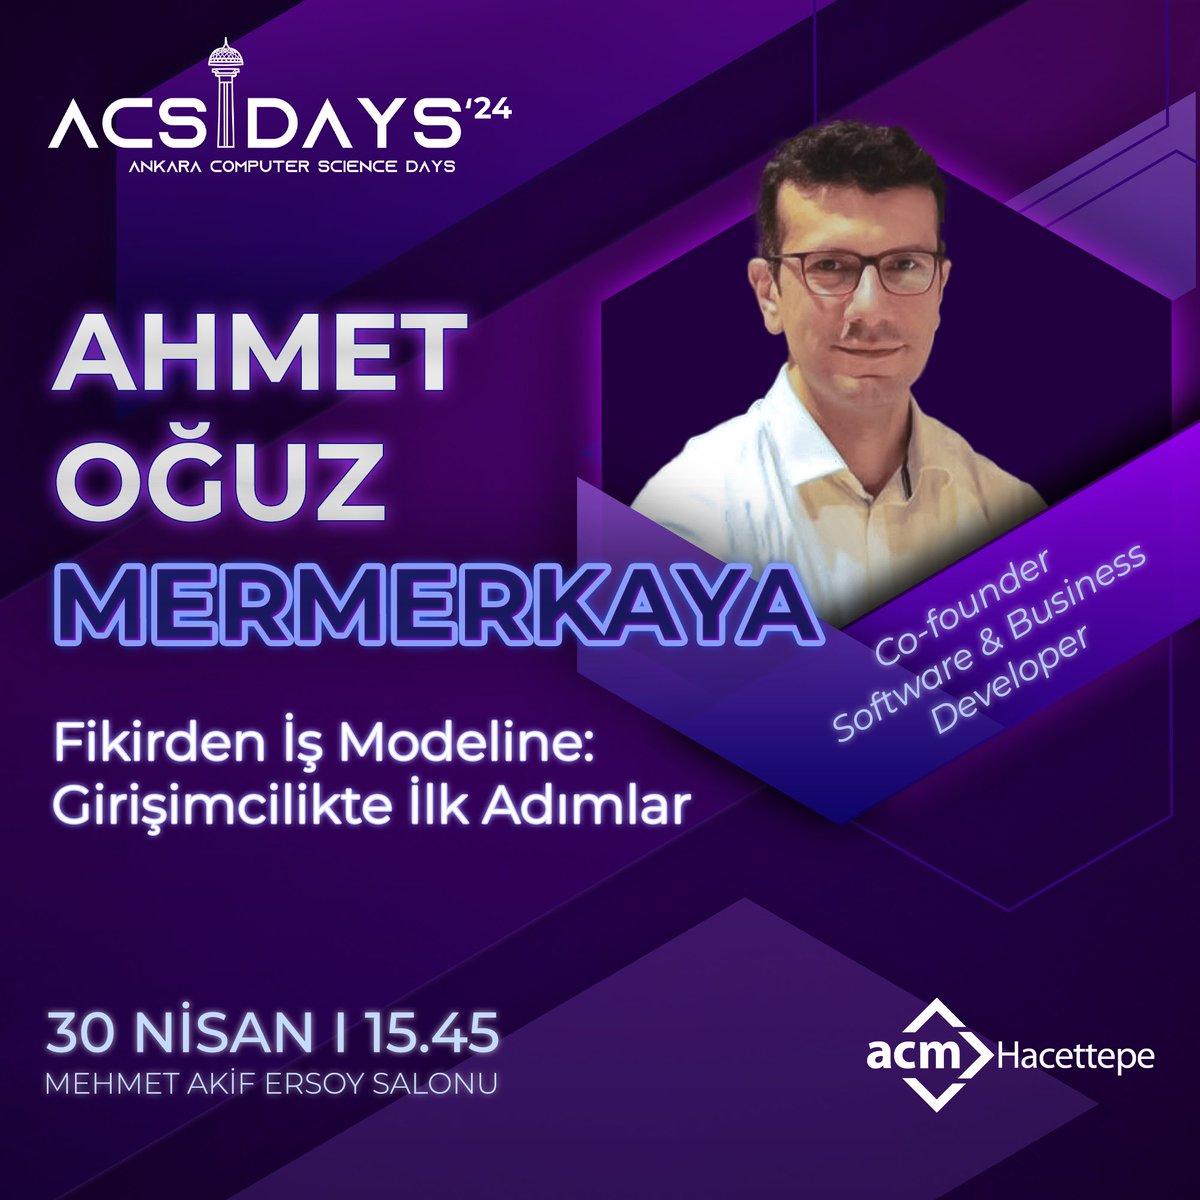 Co-founder - Software & Business Developer Ahmet Oğuz Mermerkaya 30 Nisan 15.45'te Hacettepe Mehmet Akif Ersoy Salonu'nda 'Fikirden İş Modeline: Girişimcilikte İlk Adımlar' konulu oturumu ile bizlerle olacak.🥳